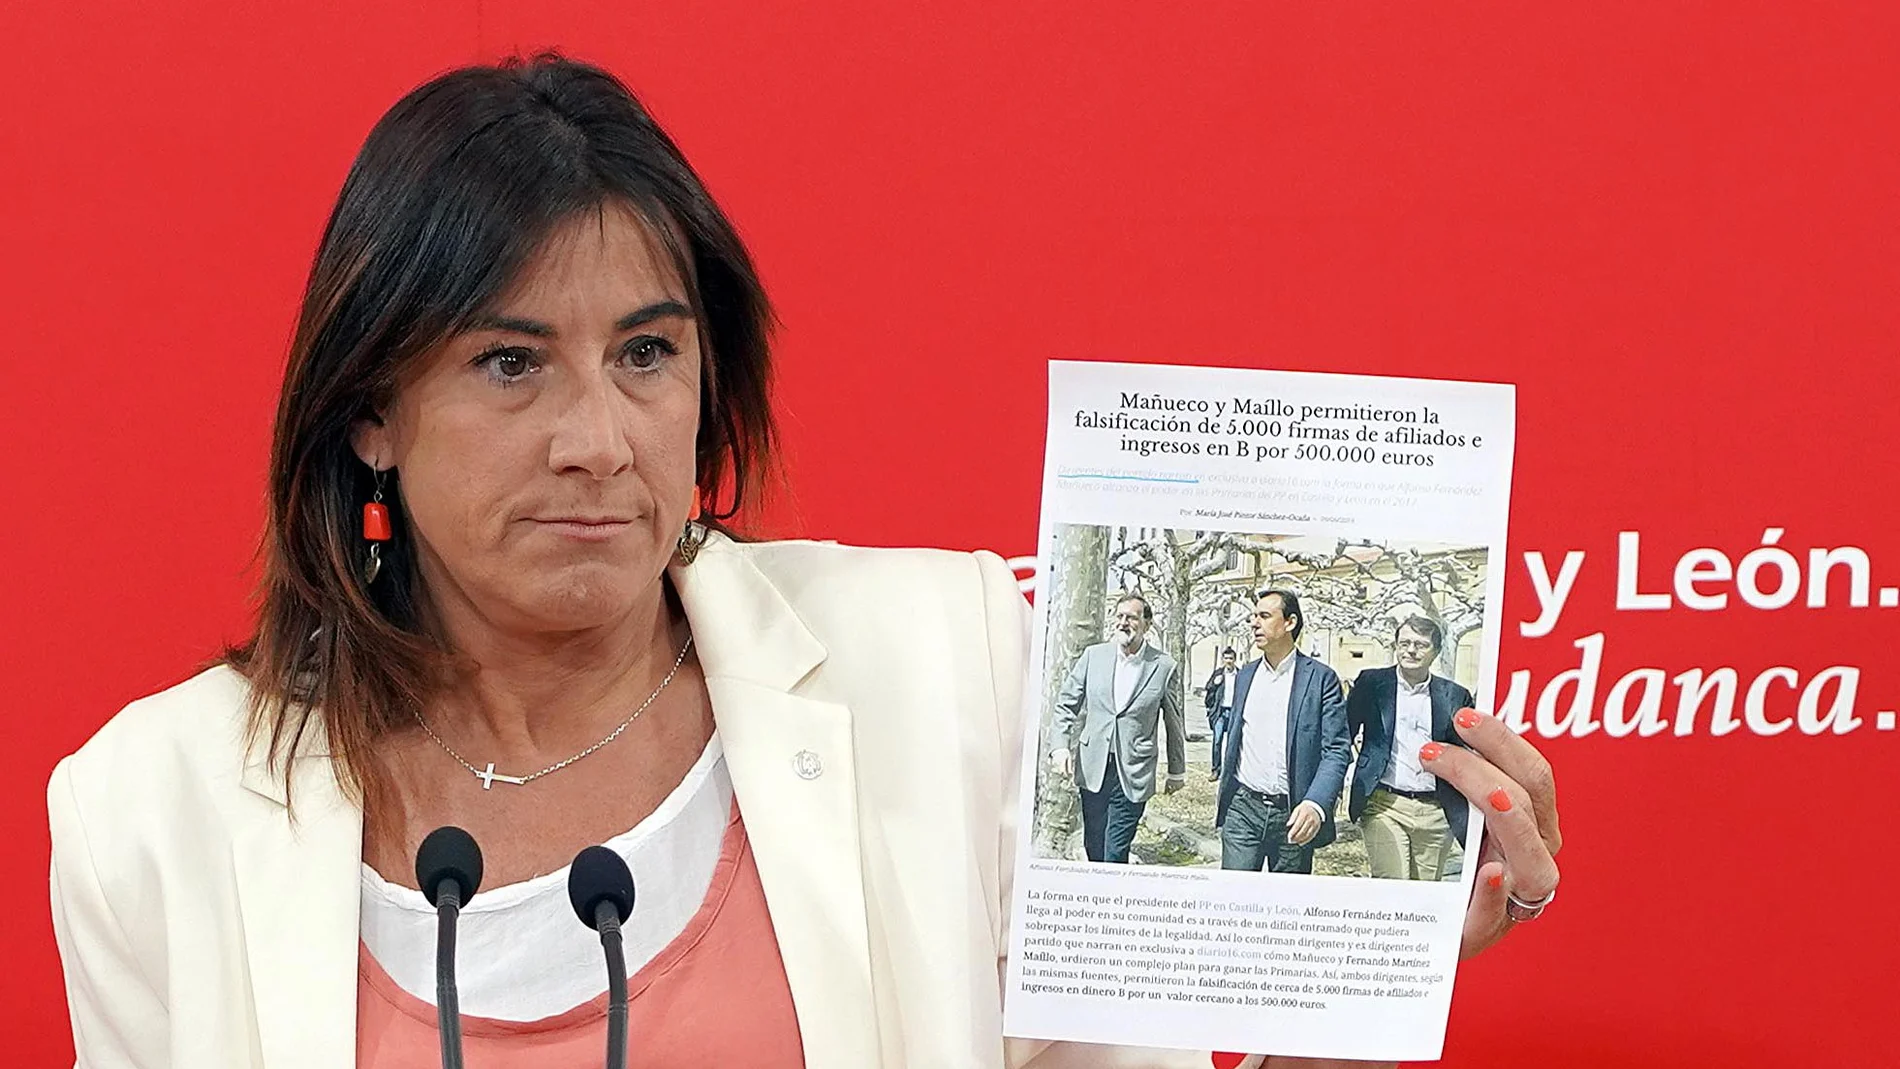 La secretaria de Organización del PSOECyL, Ana Sánchez, muestra la información en la que se acusa al Partido Popular